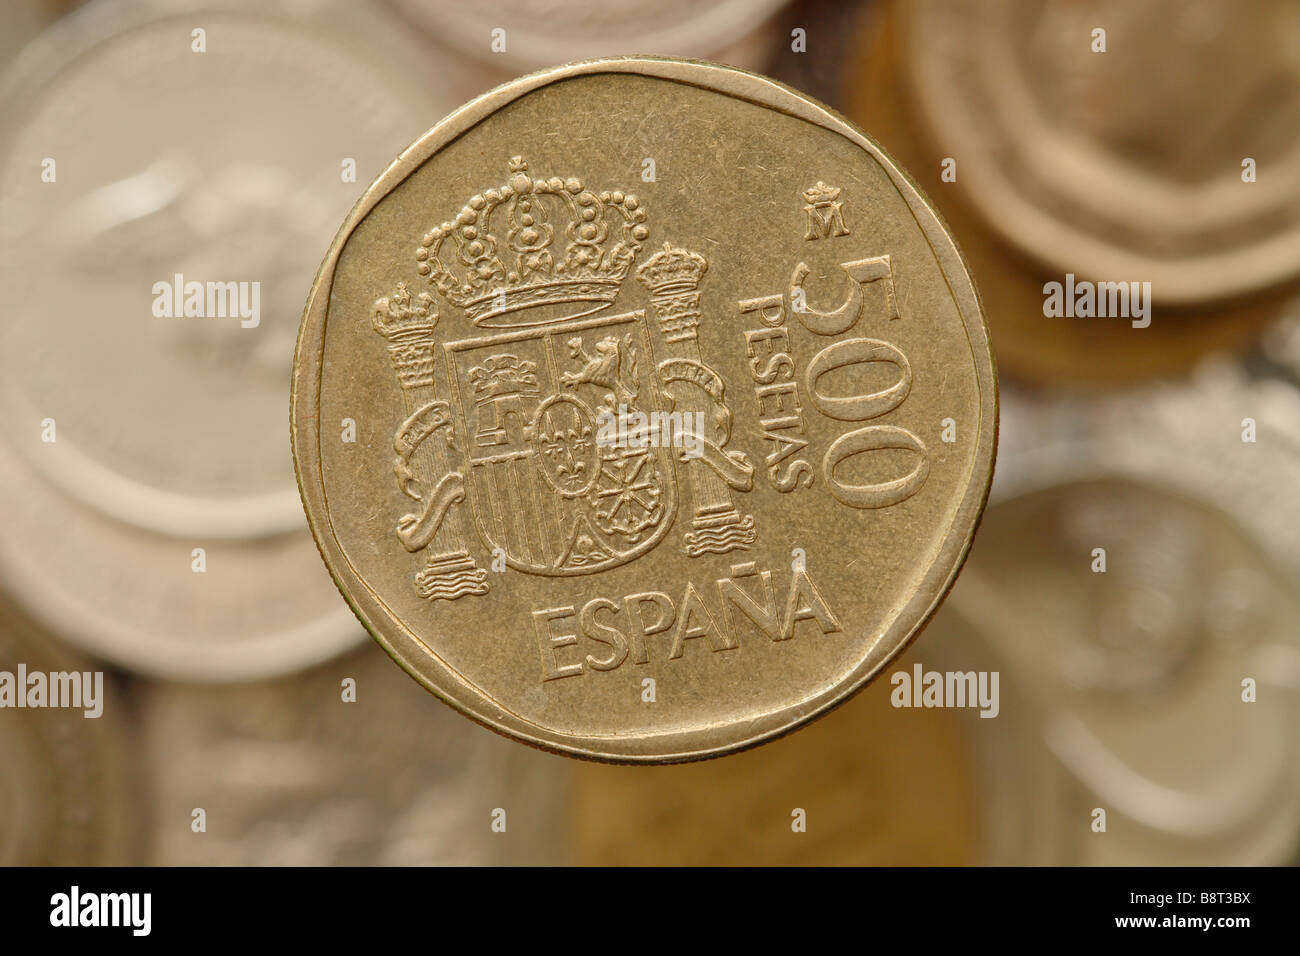 Spanien Spanisch 500 Peseten-Münze in Spanien vor der Einführung der einheitlichen Währung verwendet Stockfoto